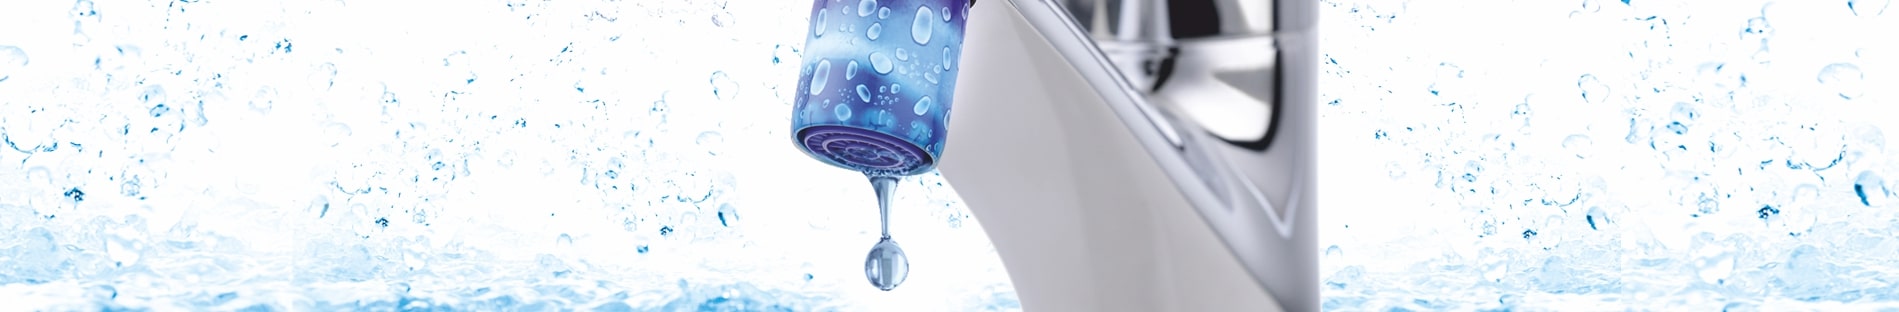 Tropfender oder spritzender Wasserhahn mit AquaClic?